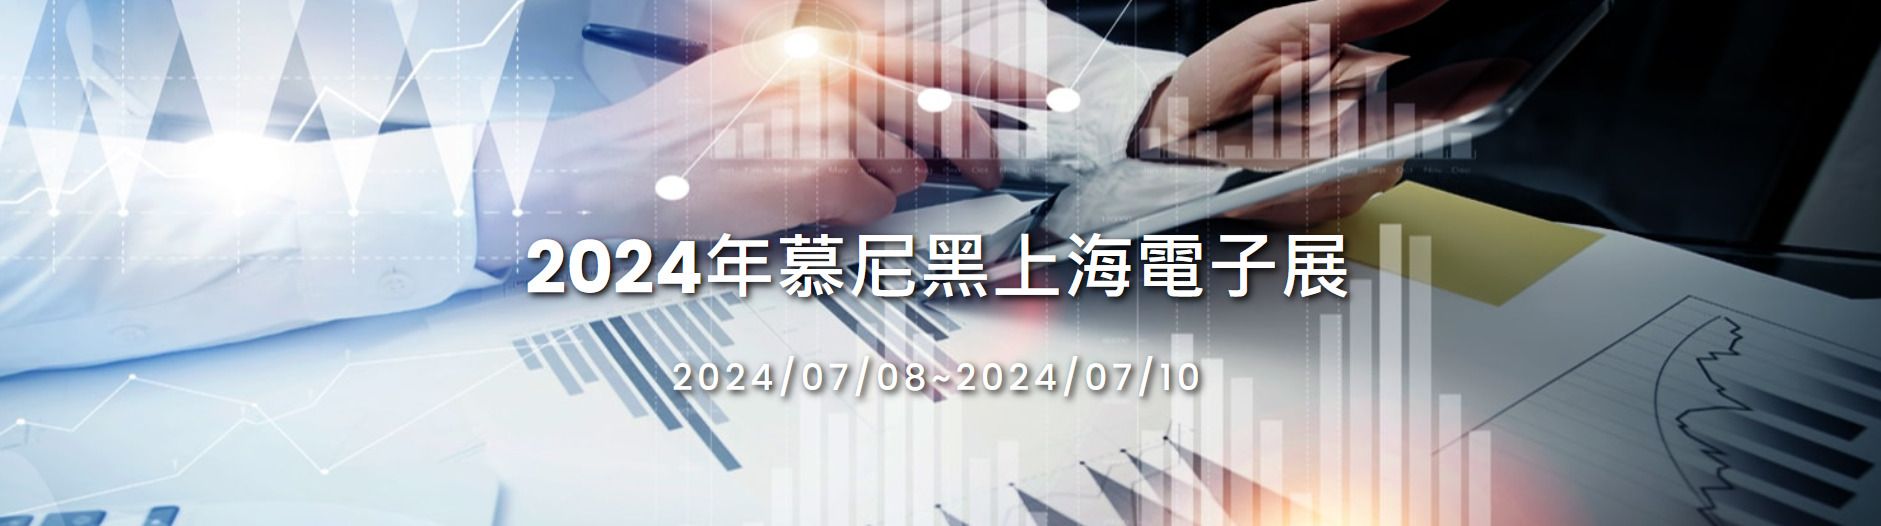 JCON Assistez à Electronica China en 2024